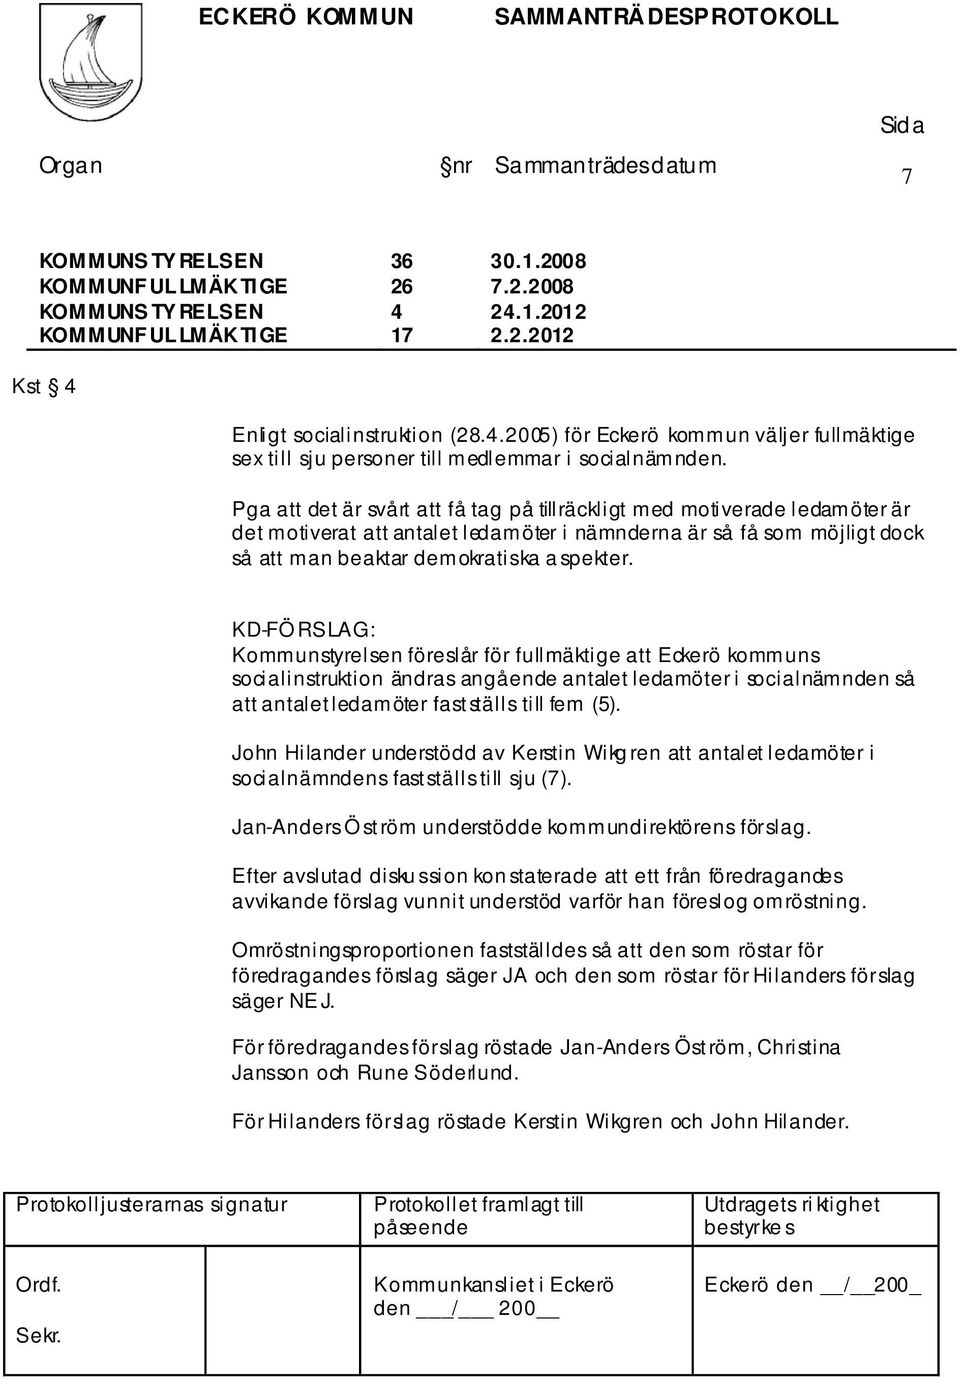 KD-FÖ RSLAG: Kommunstyrelsen föreslår för fullmäktige att Eckerö kommuns socialinstruktion ändras angående antalet ledamöter i socialnämnden så att antalet ledamöter fastställs till fem (5).